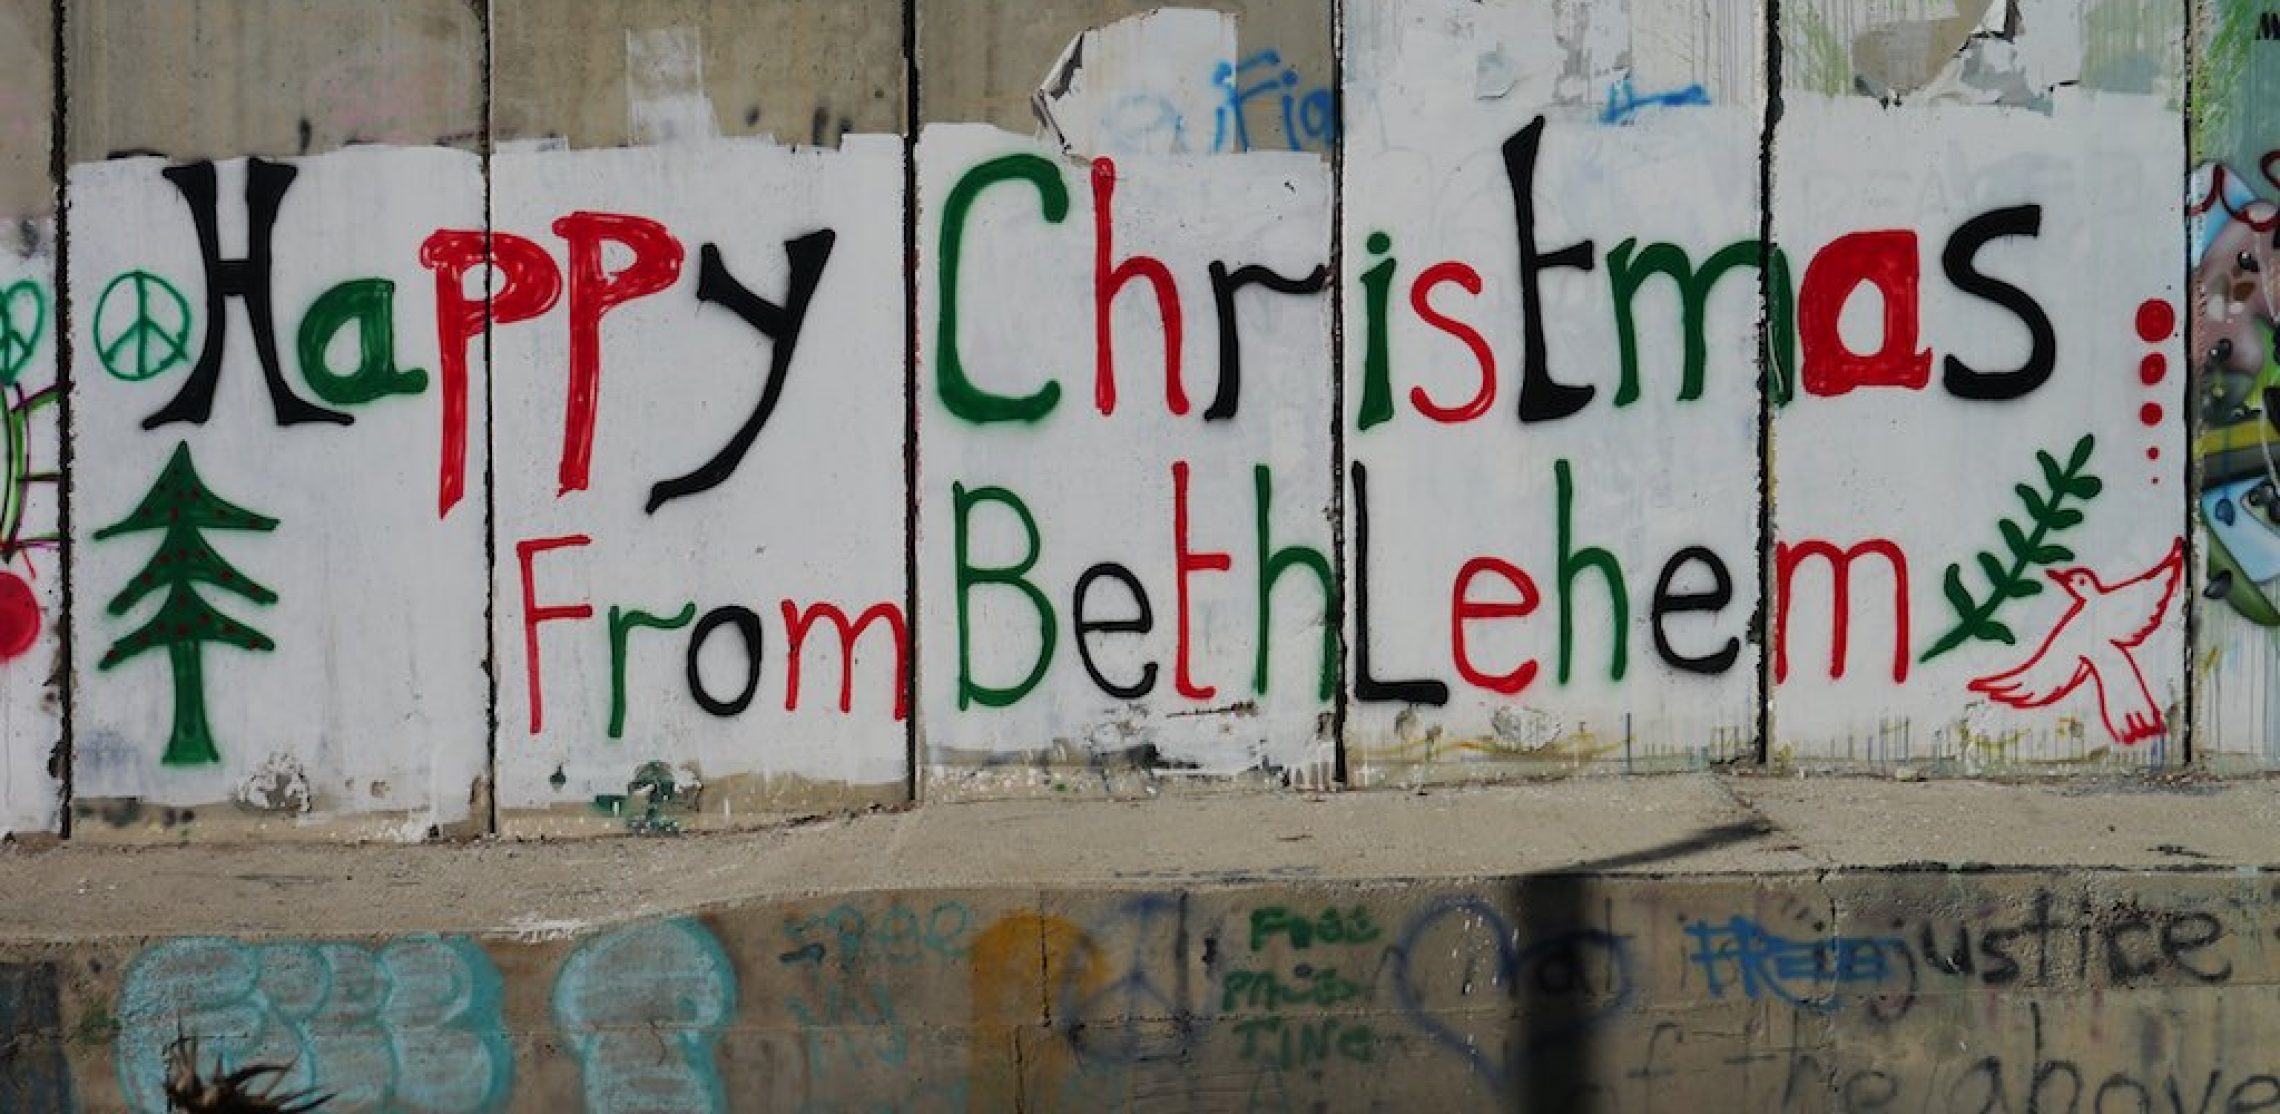 Graffiti an der Mauer in Bethlehem: Happy Christmas